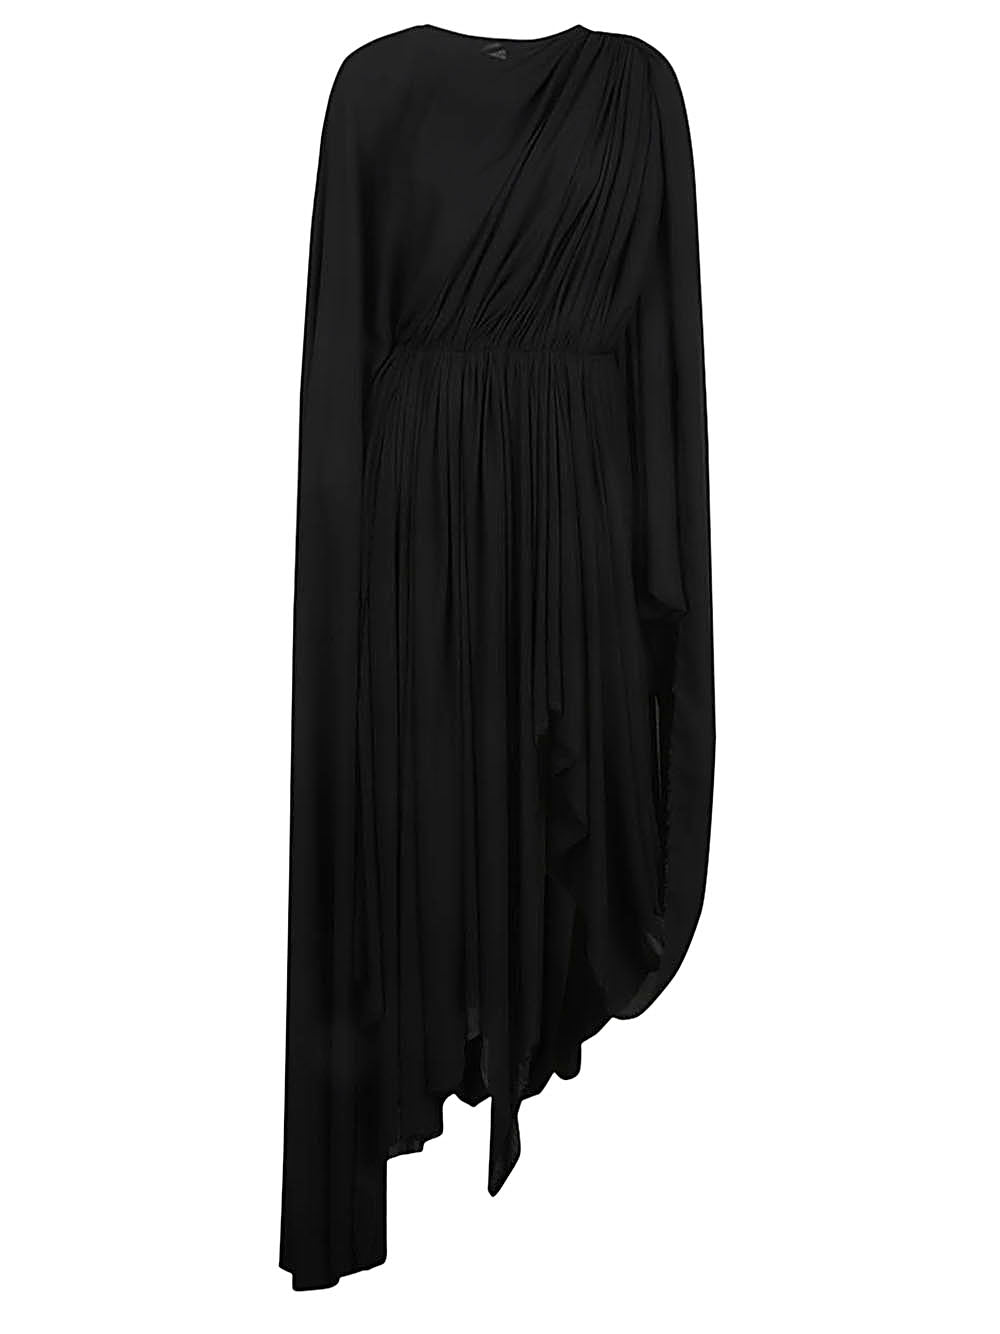 Đầm Cổ V đen với tay dài Asymmetrical cho phụ nữ